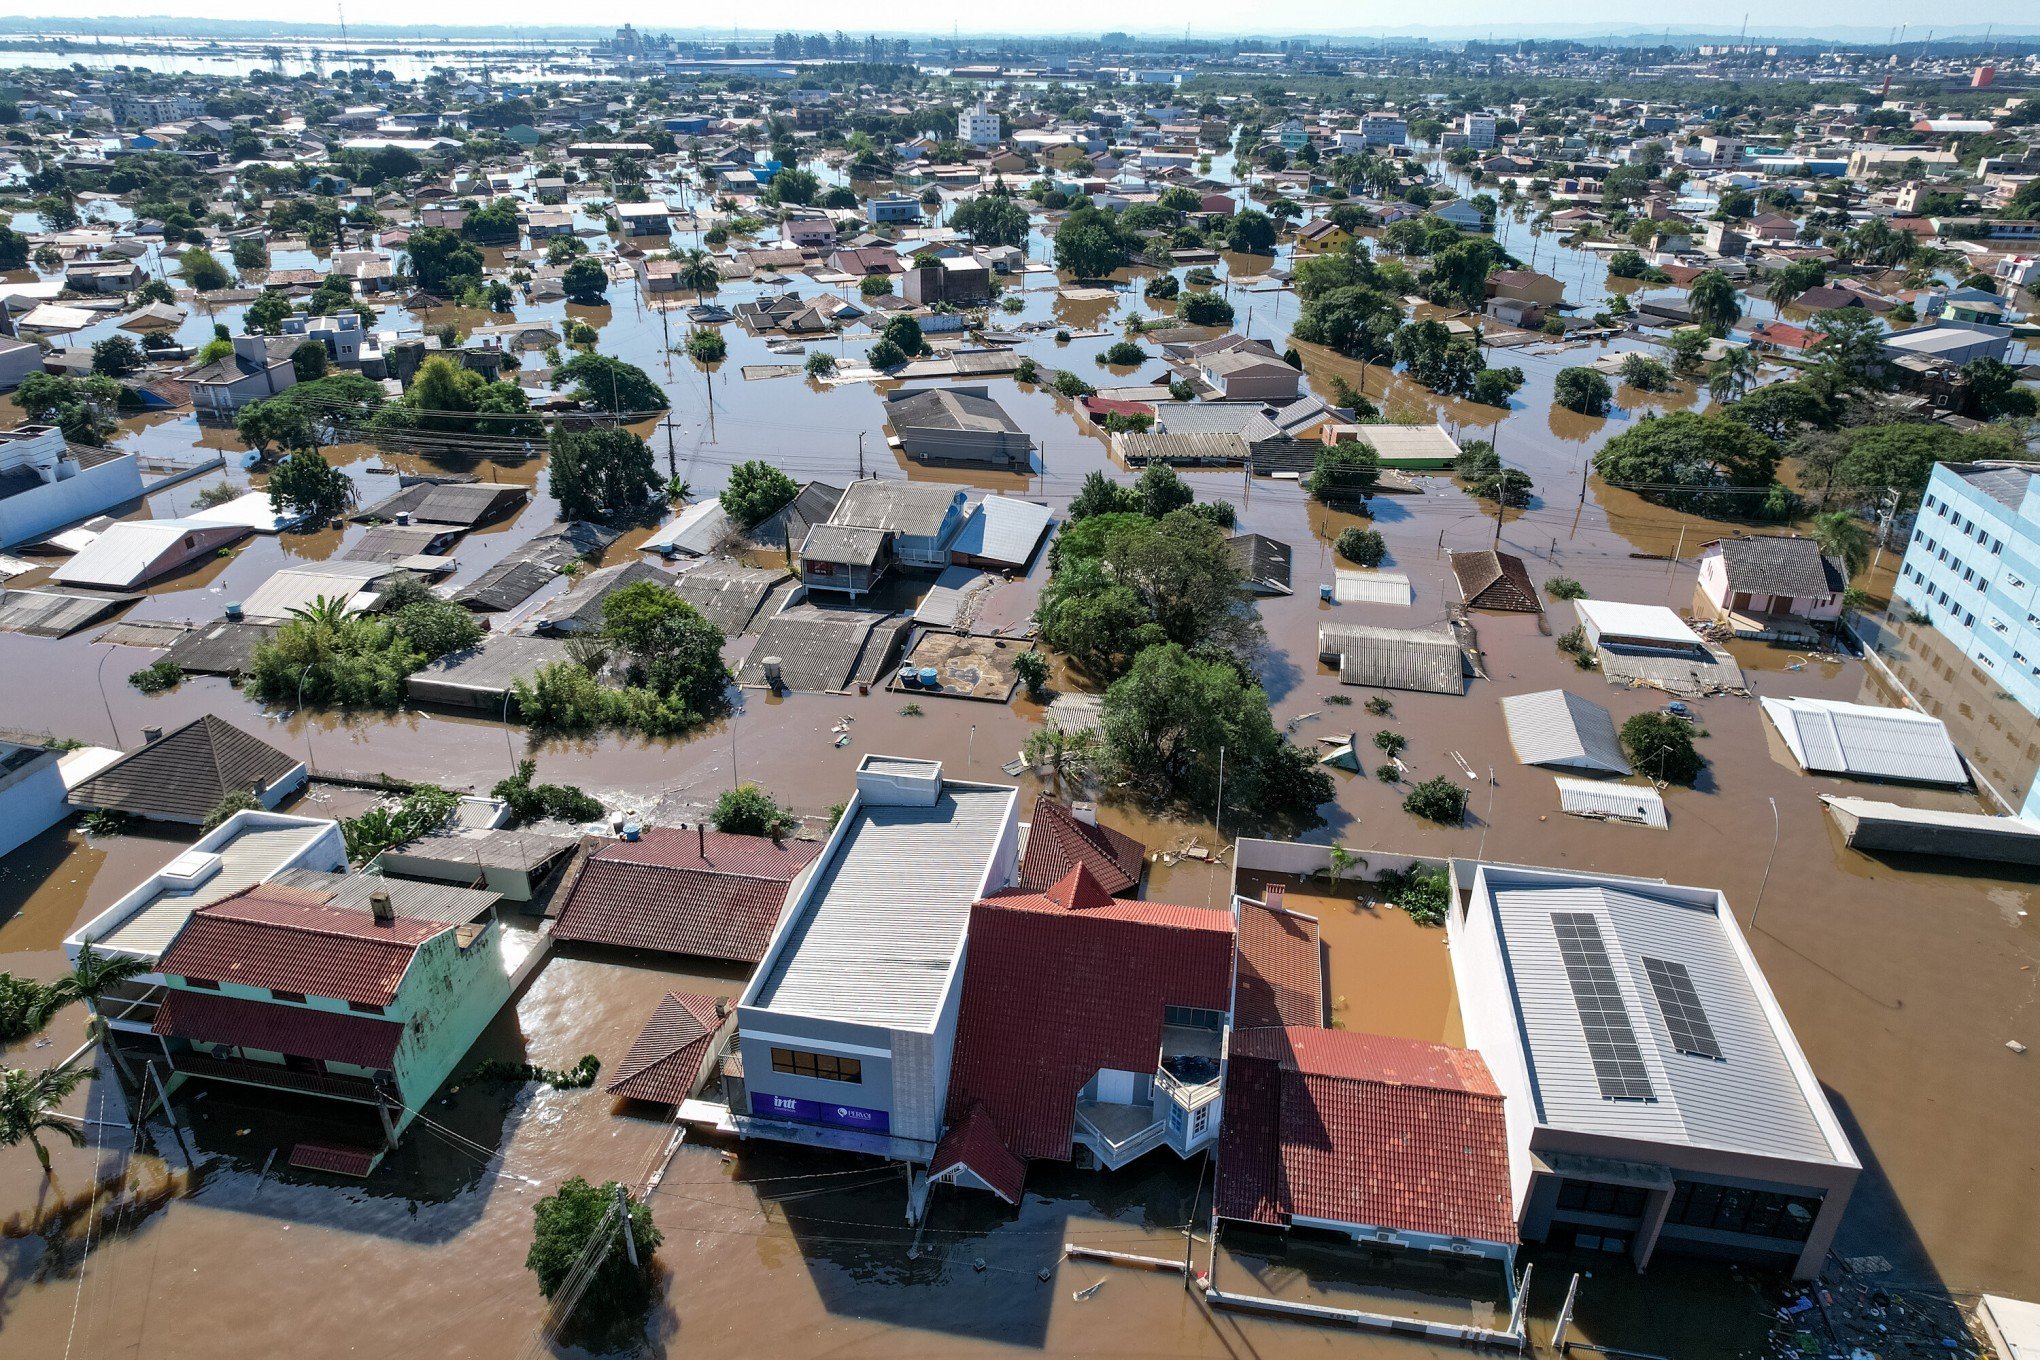 AGÊNCIA LUPA: É falso que 300 corpos foram encontrados em Canoas durante evacuação